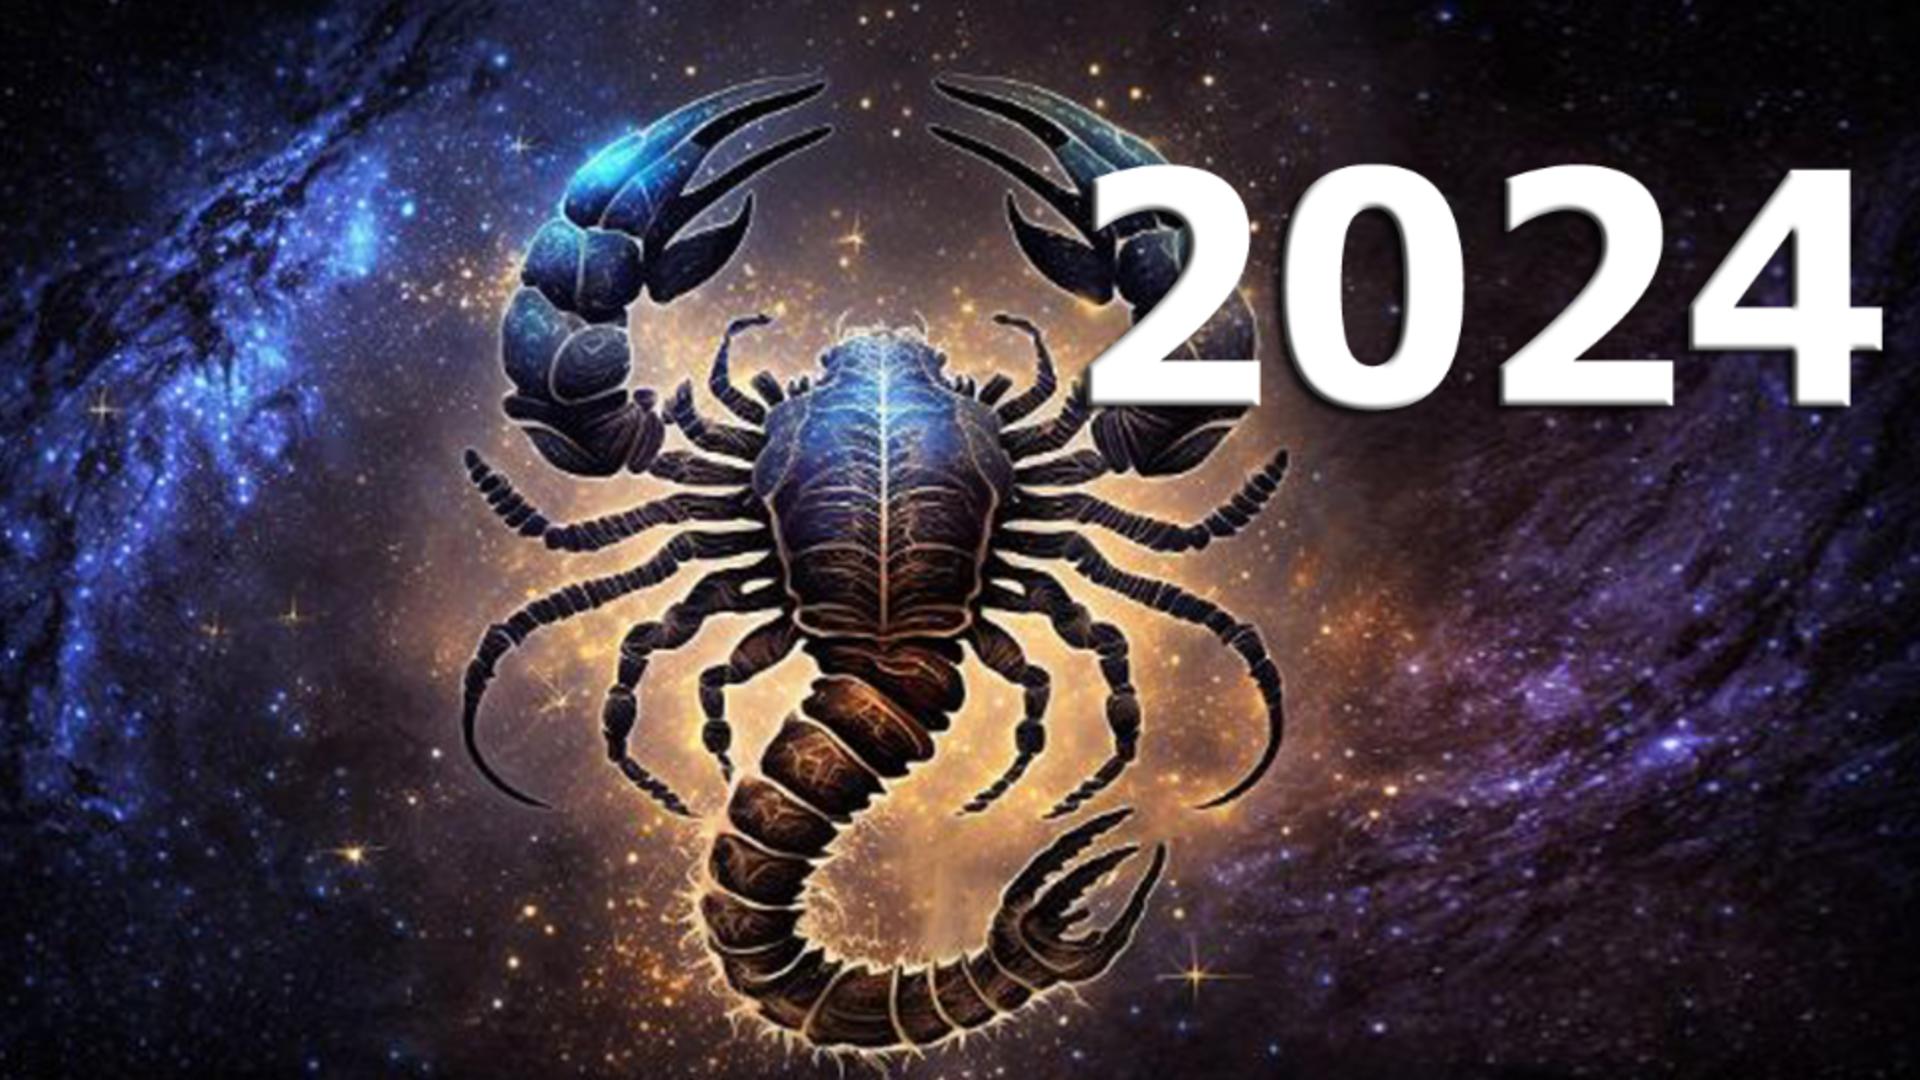 Horoscopul anului 2024 – Scorpion. Astrele îți dau agresivitate și inițiativă, mai ales în dragoste. Evita suprasolicitarea sistemului nervos